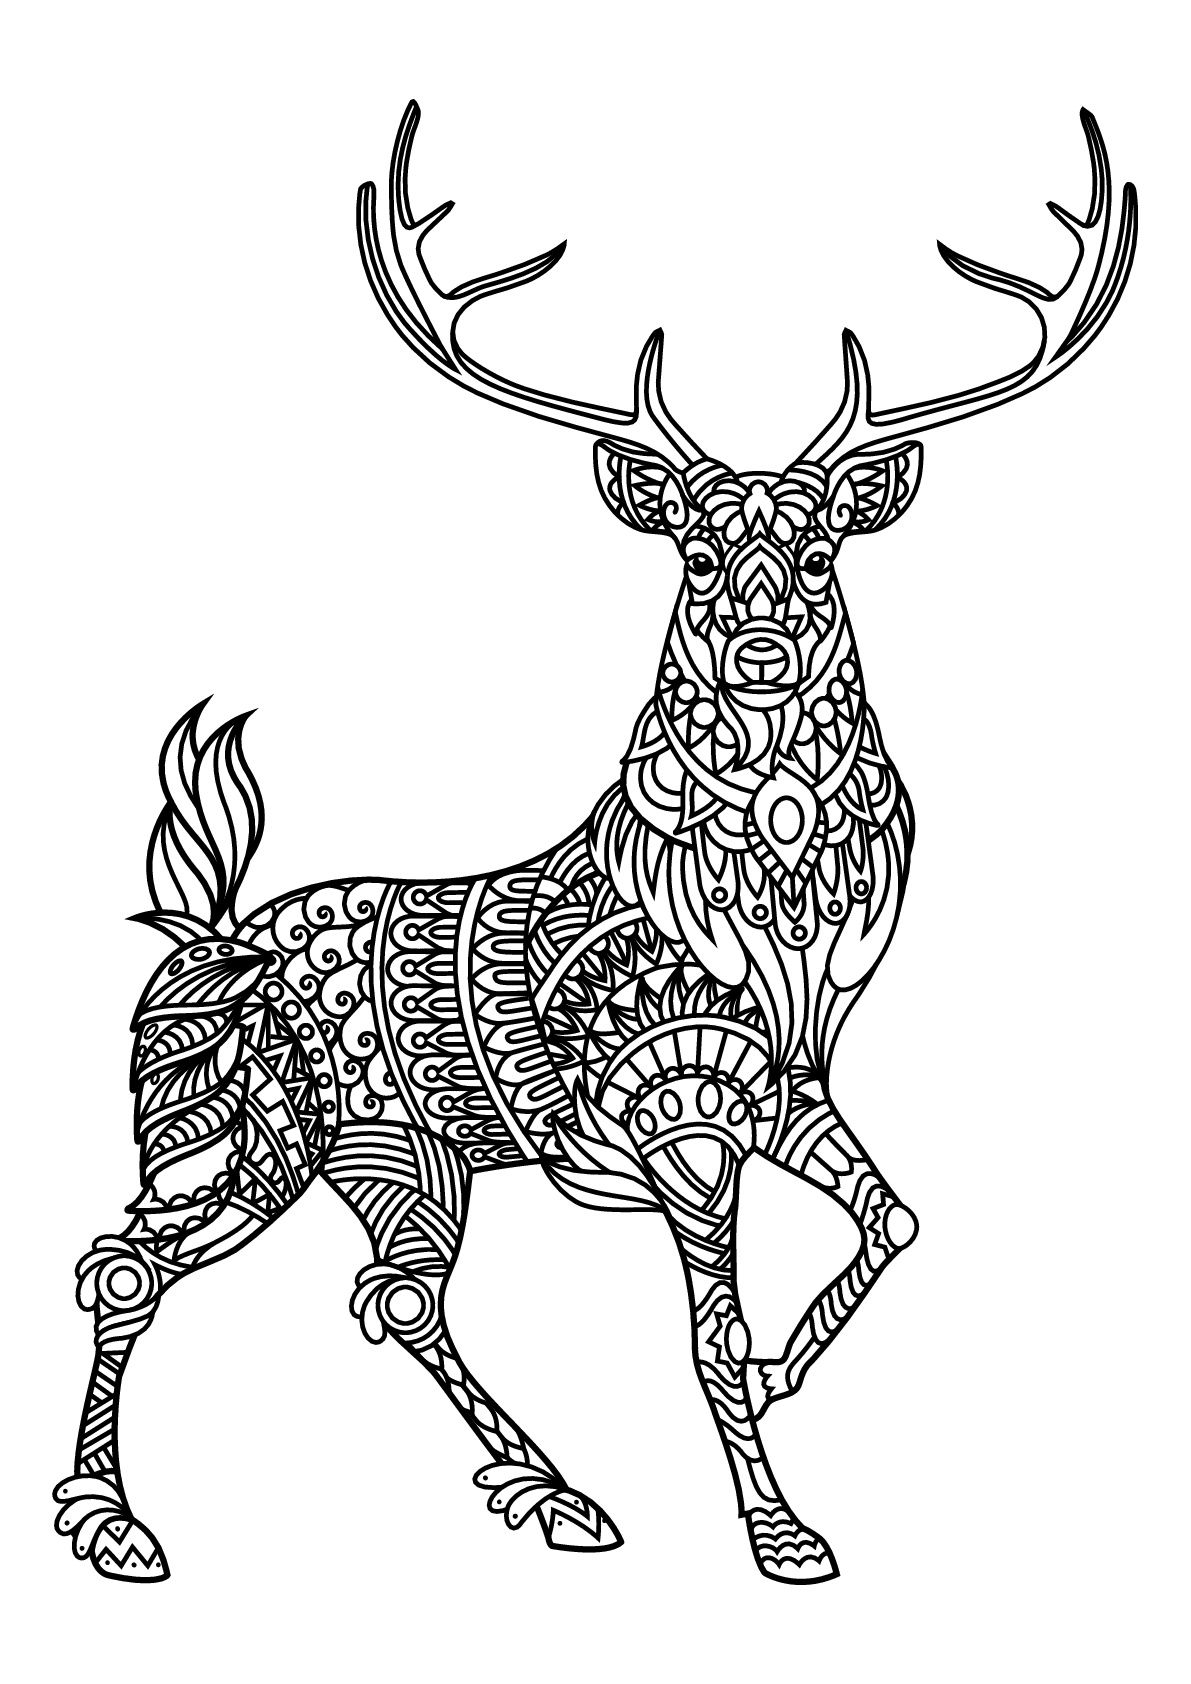 Download Free book deer - Deers Adult Coloring Pages